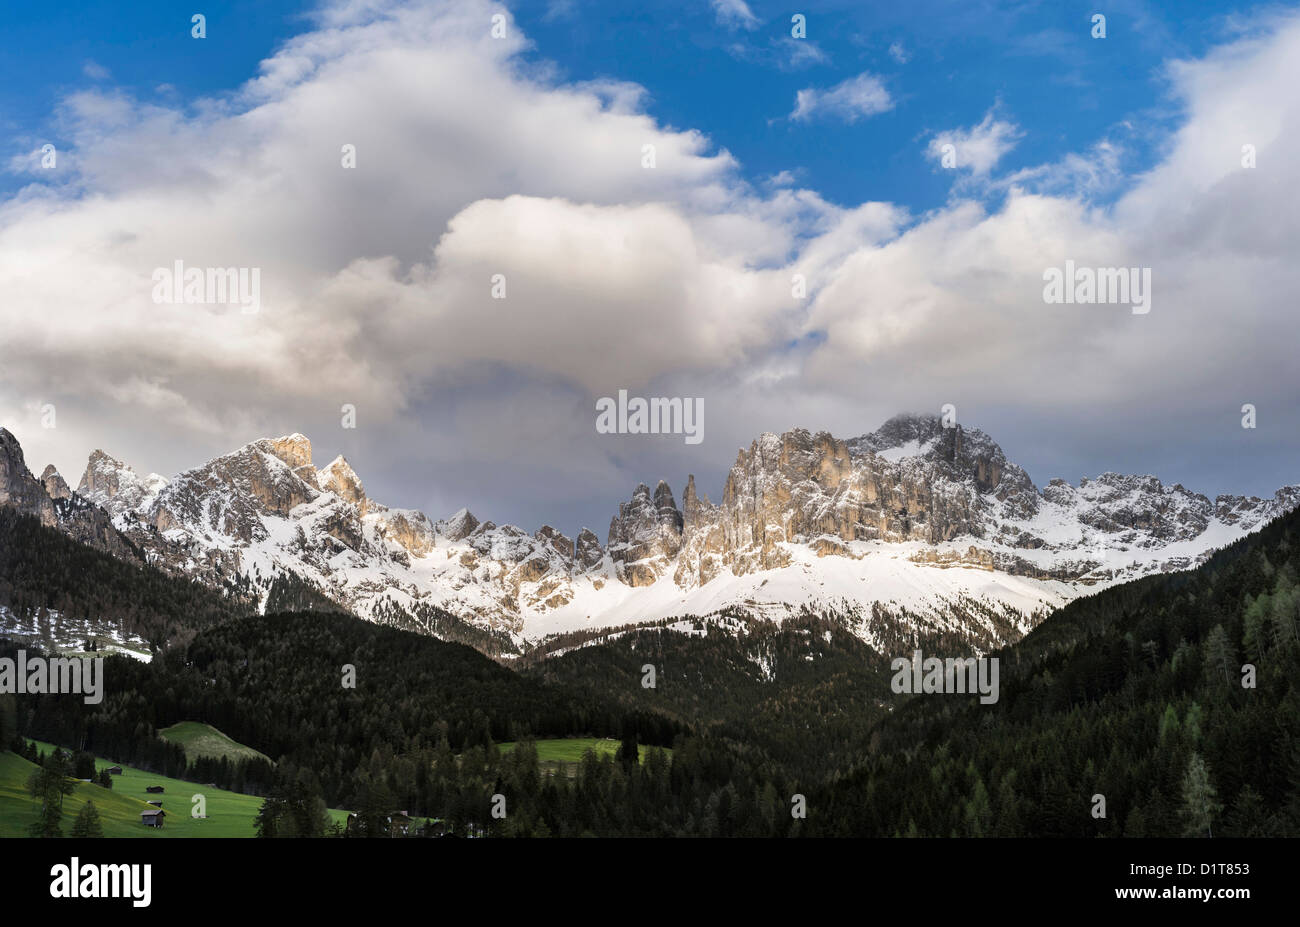 Rosengarten oder Rosengarten Berge der Dolomiten von Südtirol nach einem Schneesturm im Frühling. Dolomiten, Italien, Südtirol. Stockfoto